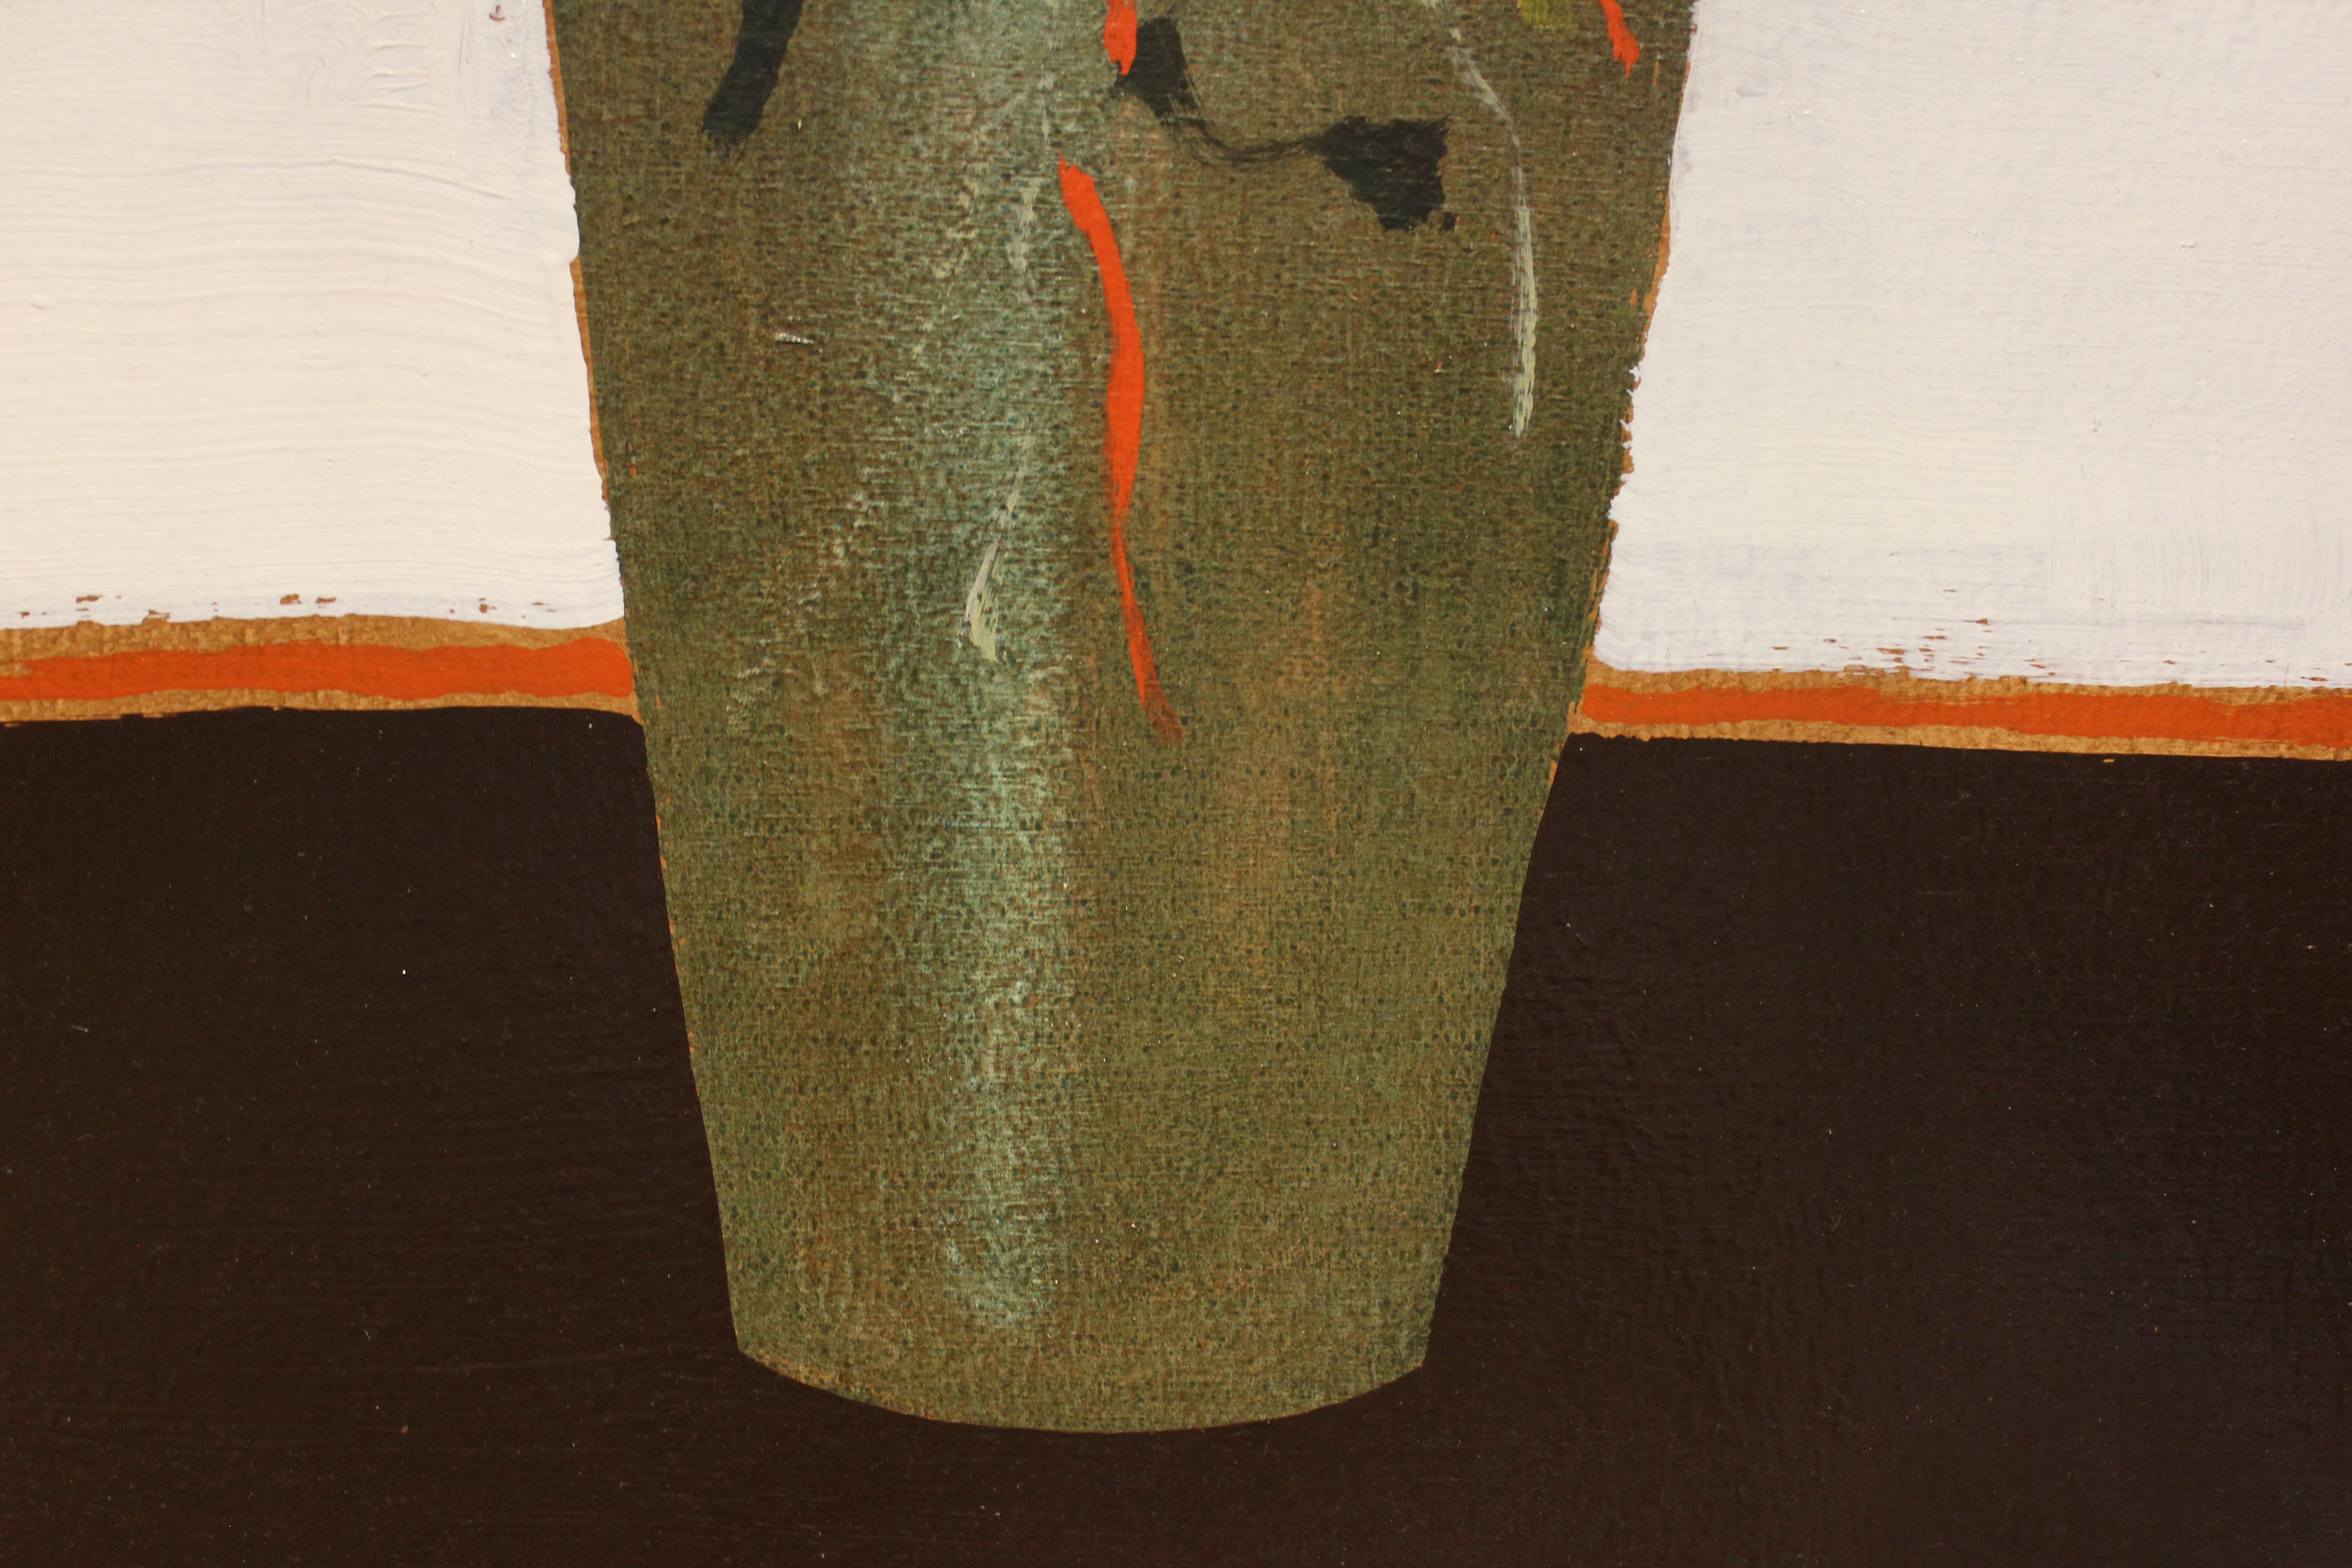 Lamar Briggs Abstraktes Blumenstillleben. Um 1960er.

Biografie des Künstlers:
Lamar Briggs (1935-2015), geboren in Lafayette, Louisiana, besuchte die University of Southern Louisiana, die University of Houston und machte seinen Abschluss am